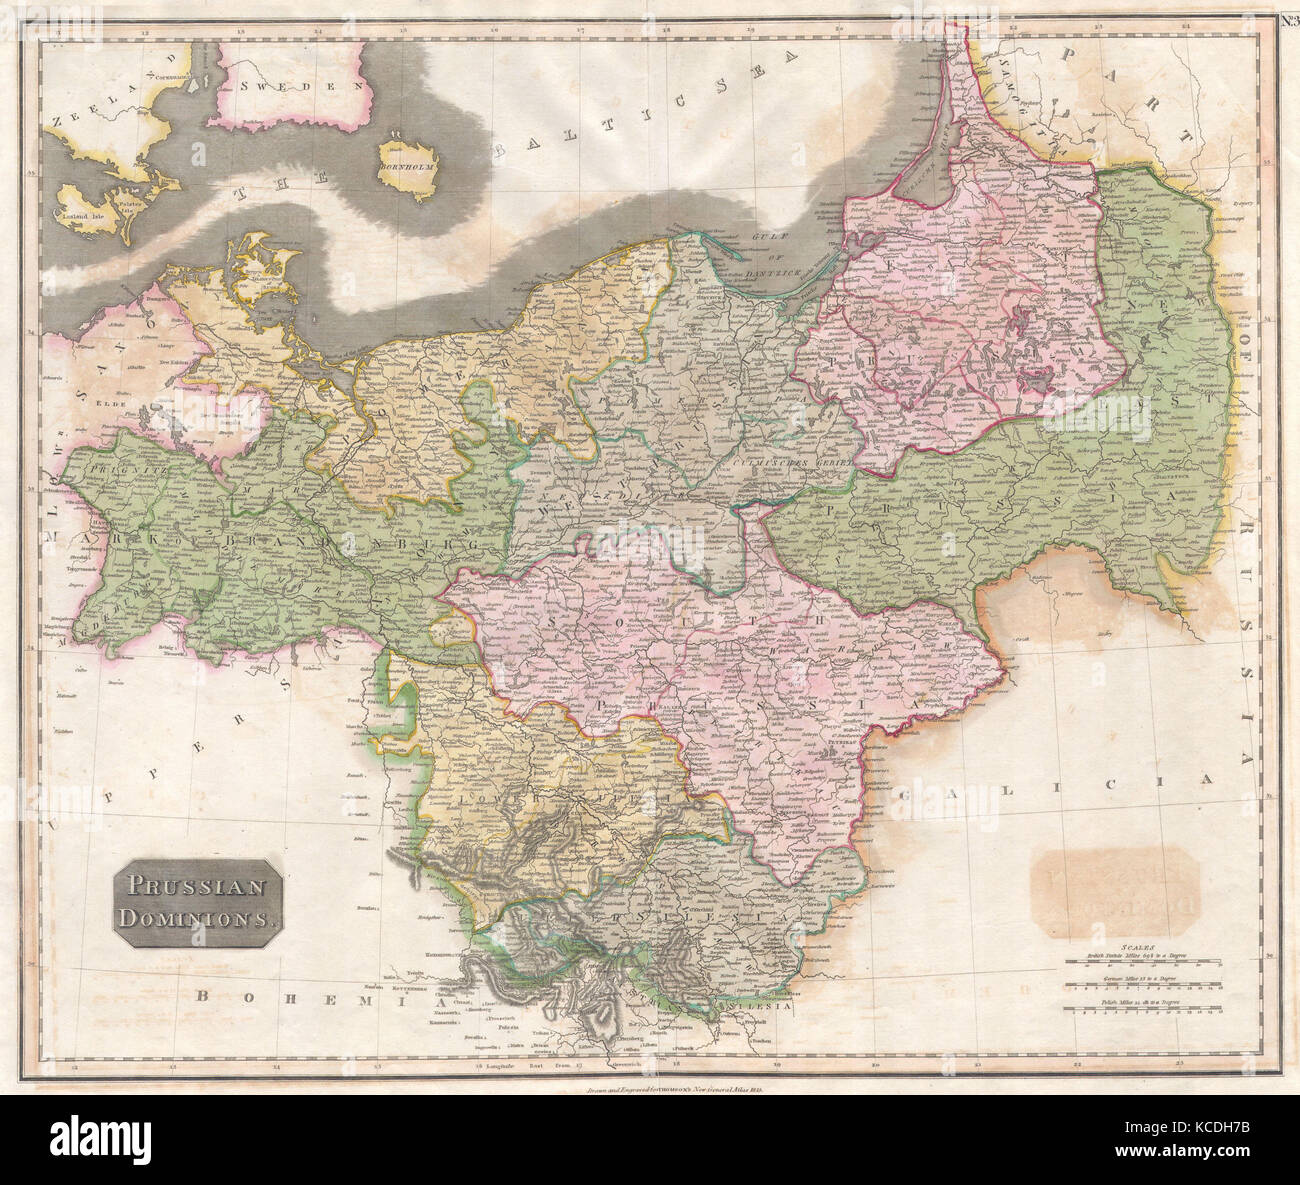 En 1815, Thomson Mapa de Prusia, Alemania, John Thomson, 1777 - 1840, fue un cartógrafo Escocés de Edimburgo, Reino Unido Foto de stock